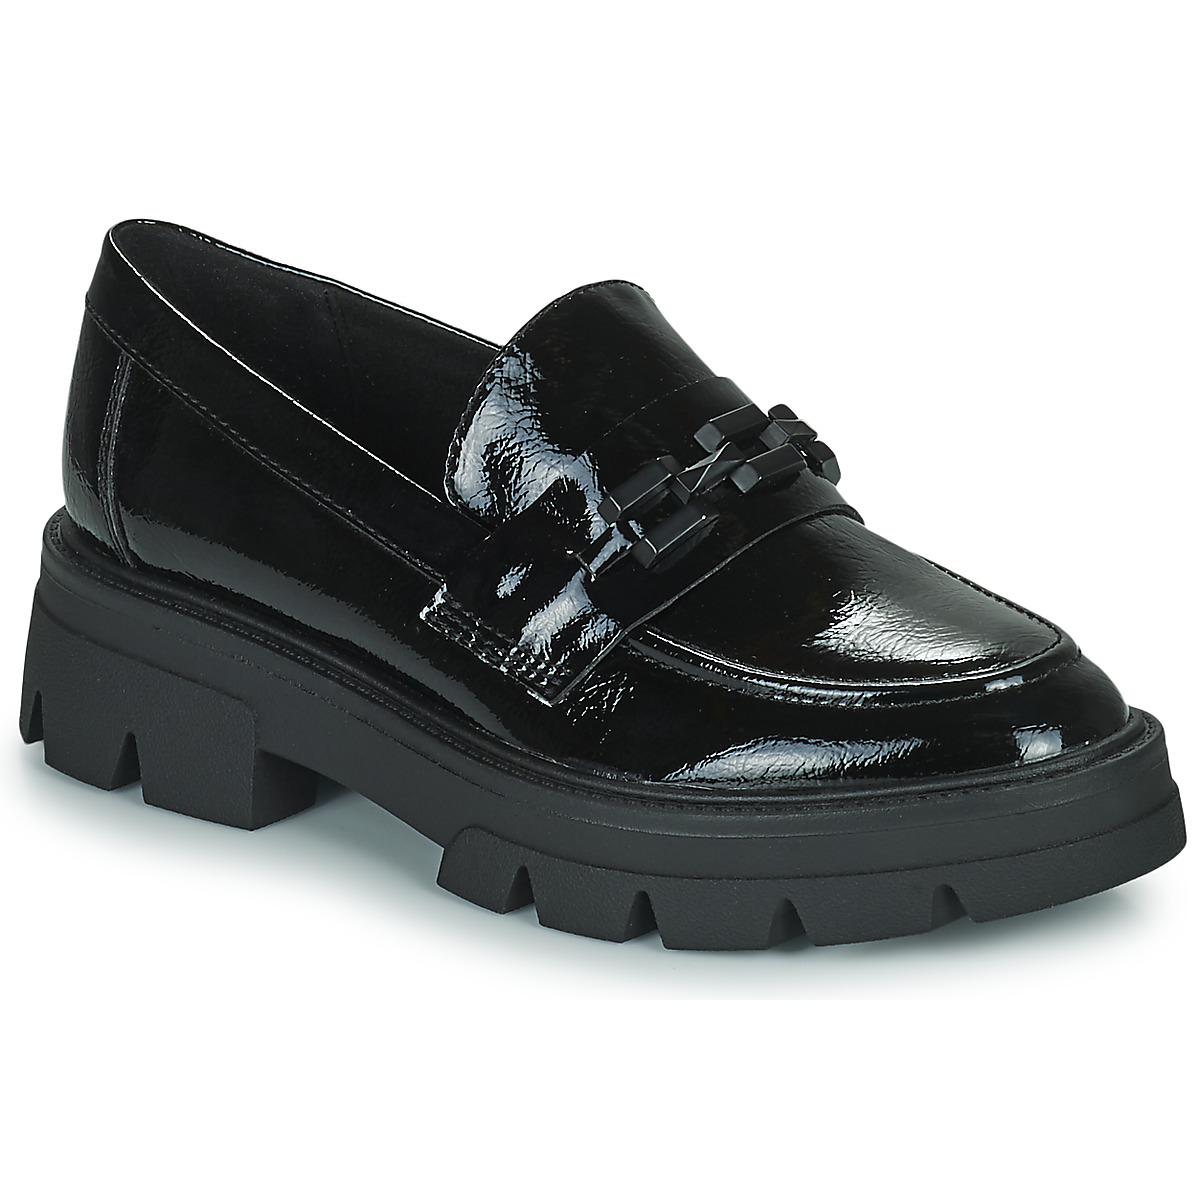 Cipők Női Mokkaszínek S.Oliver 24700-39-018 Fekete 